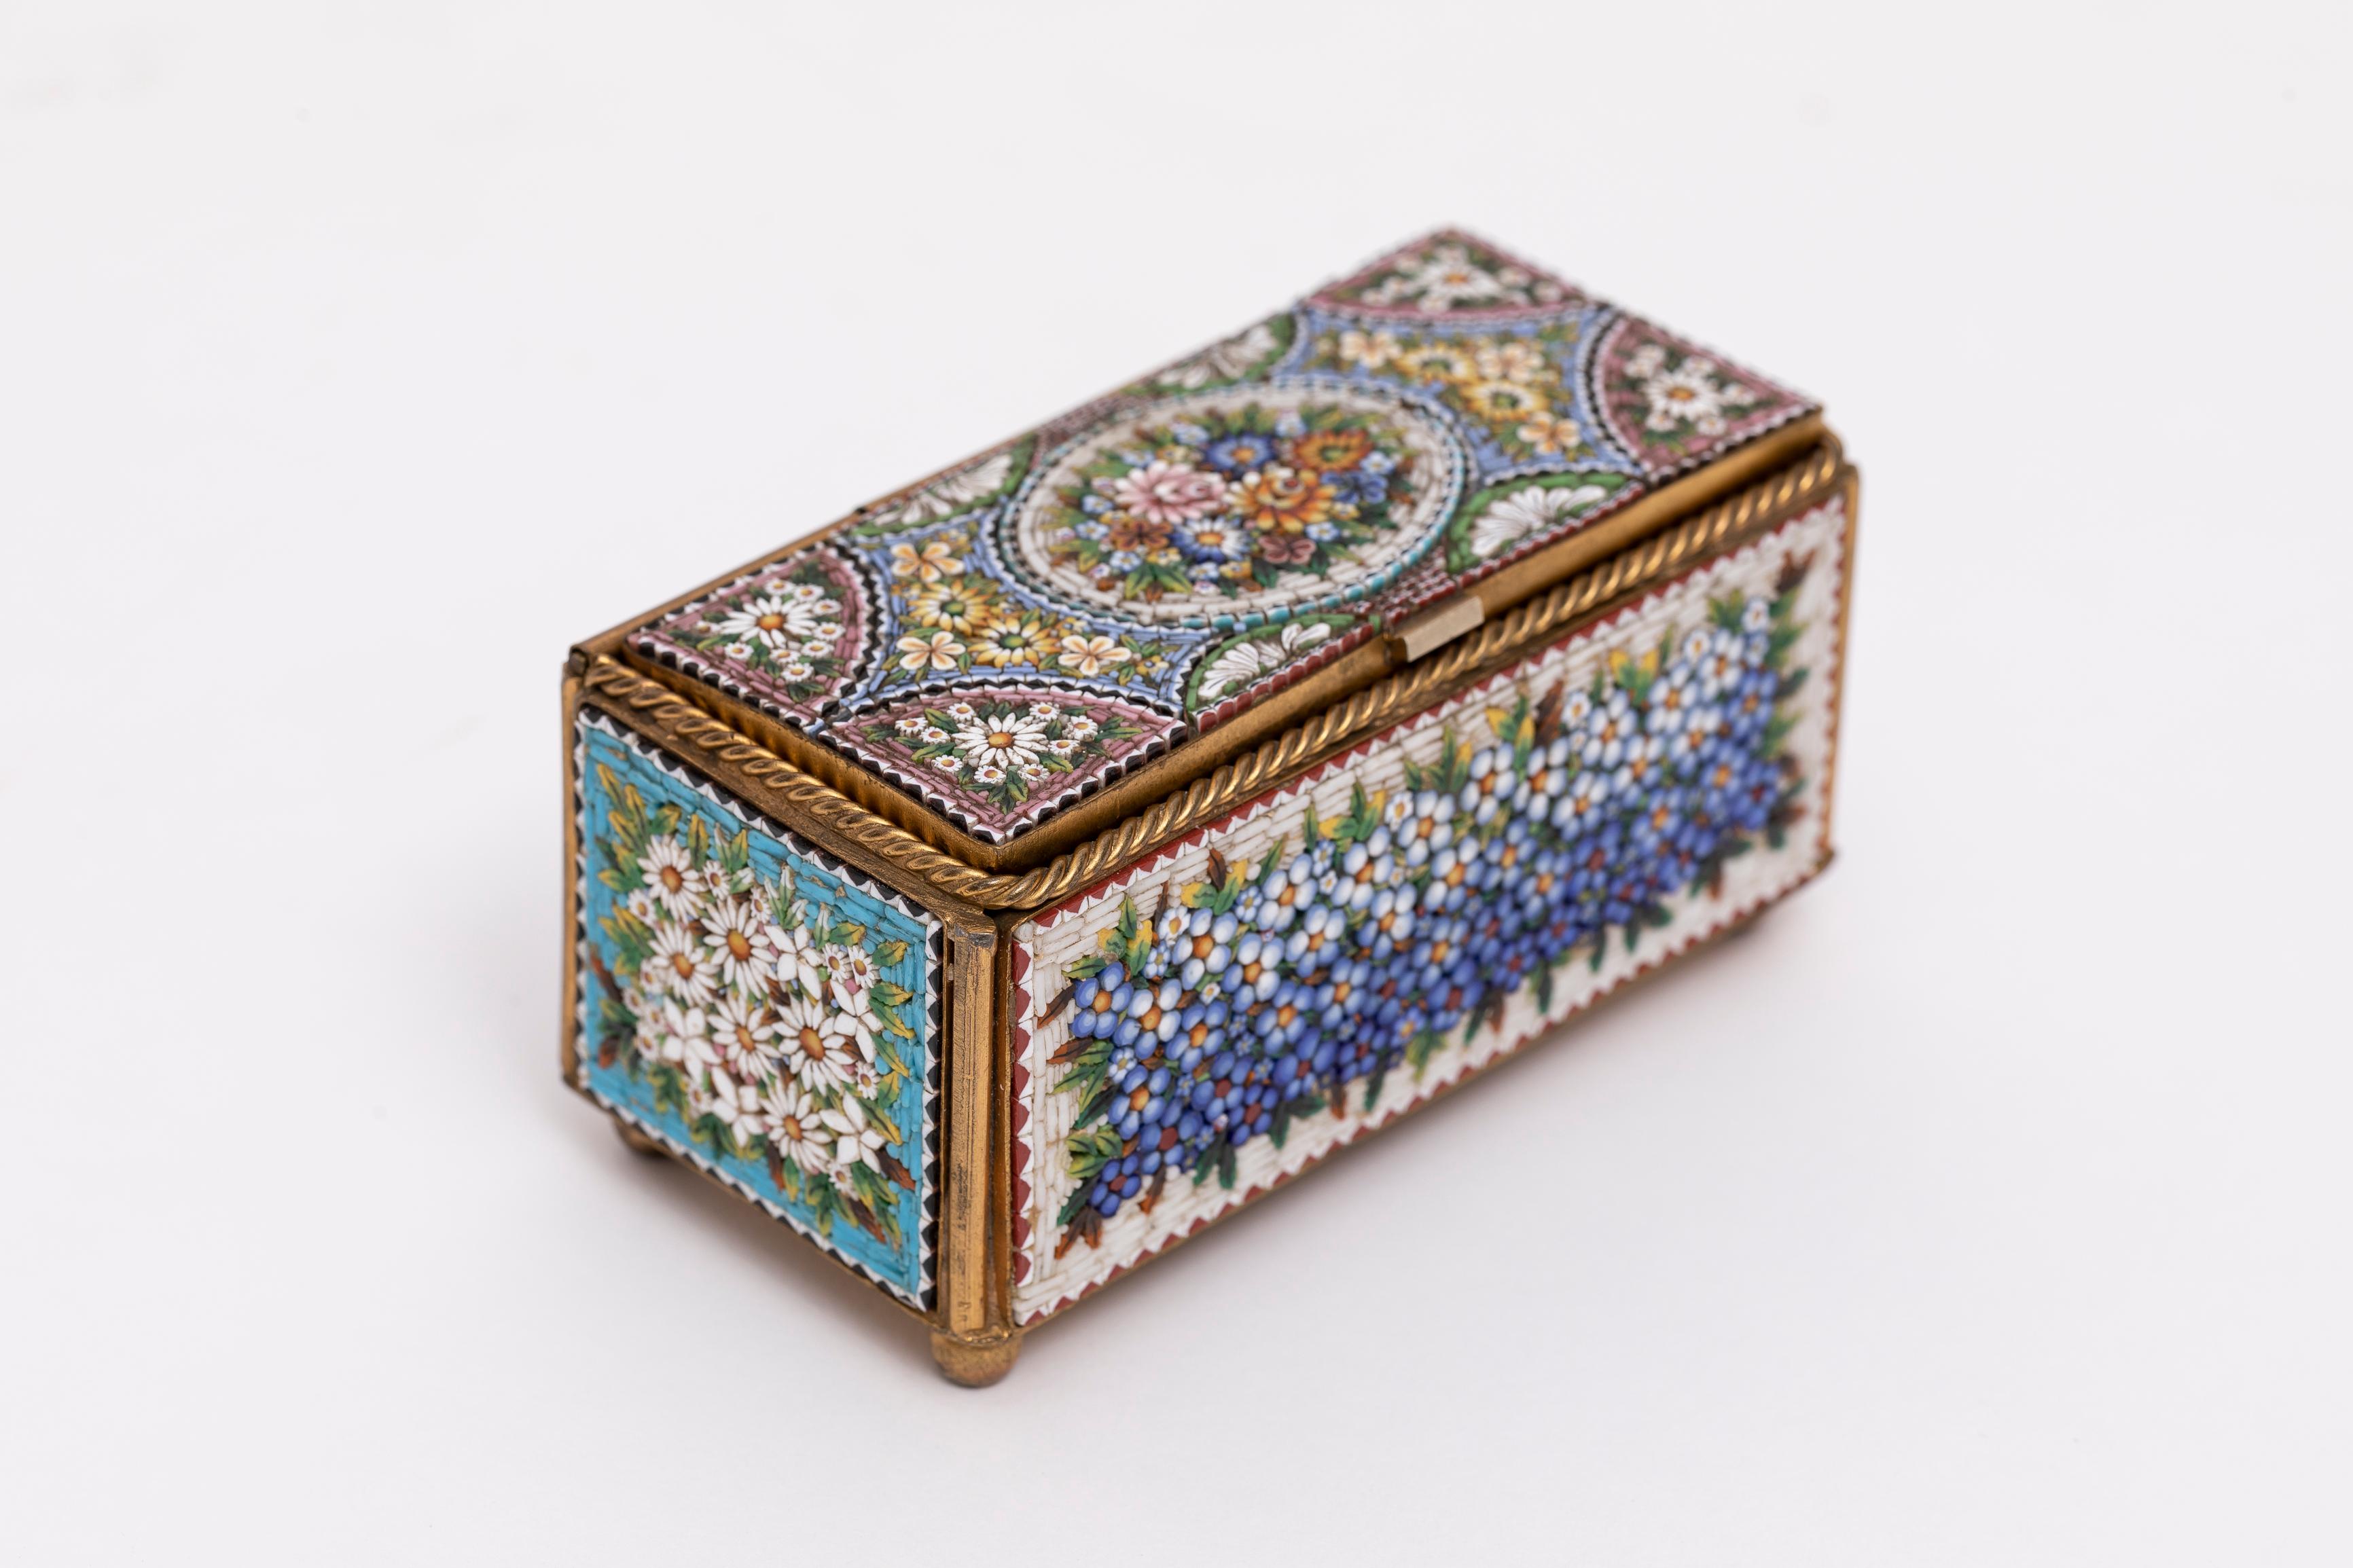 Eine wunderbare antike 19. Jahrhundert Italienisch Micro Mosaik Floral Motiv Schmuck-Box.  Mit diesem exquisiten italienischen Mikro-Mosaik-Schmuckkästchen aus dem Jahr 1880 machen Sie eine Reise in die Vergangenheit. Diese wunderschöne, mit viel